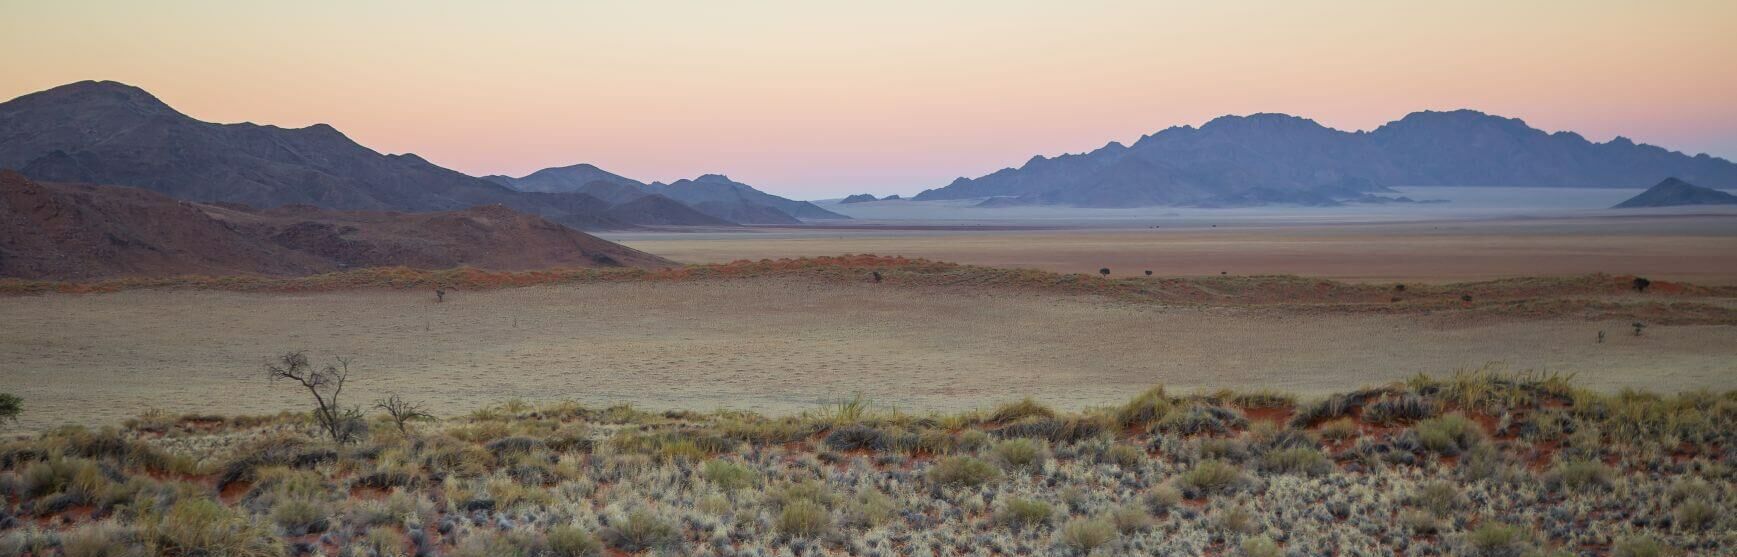 Namib Naukluft Berge in Namibia